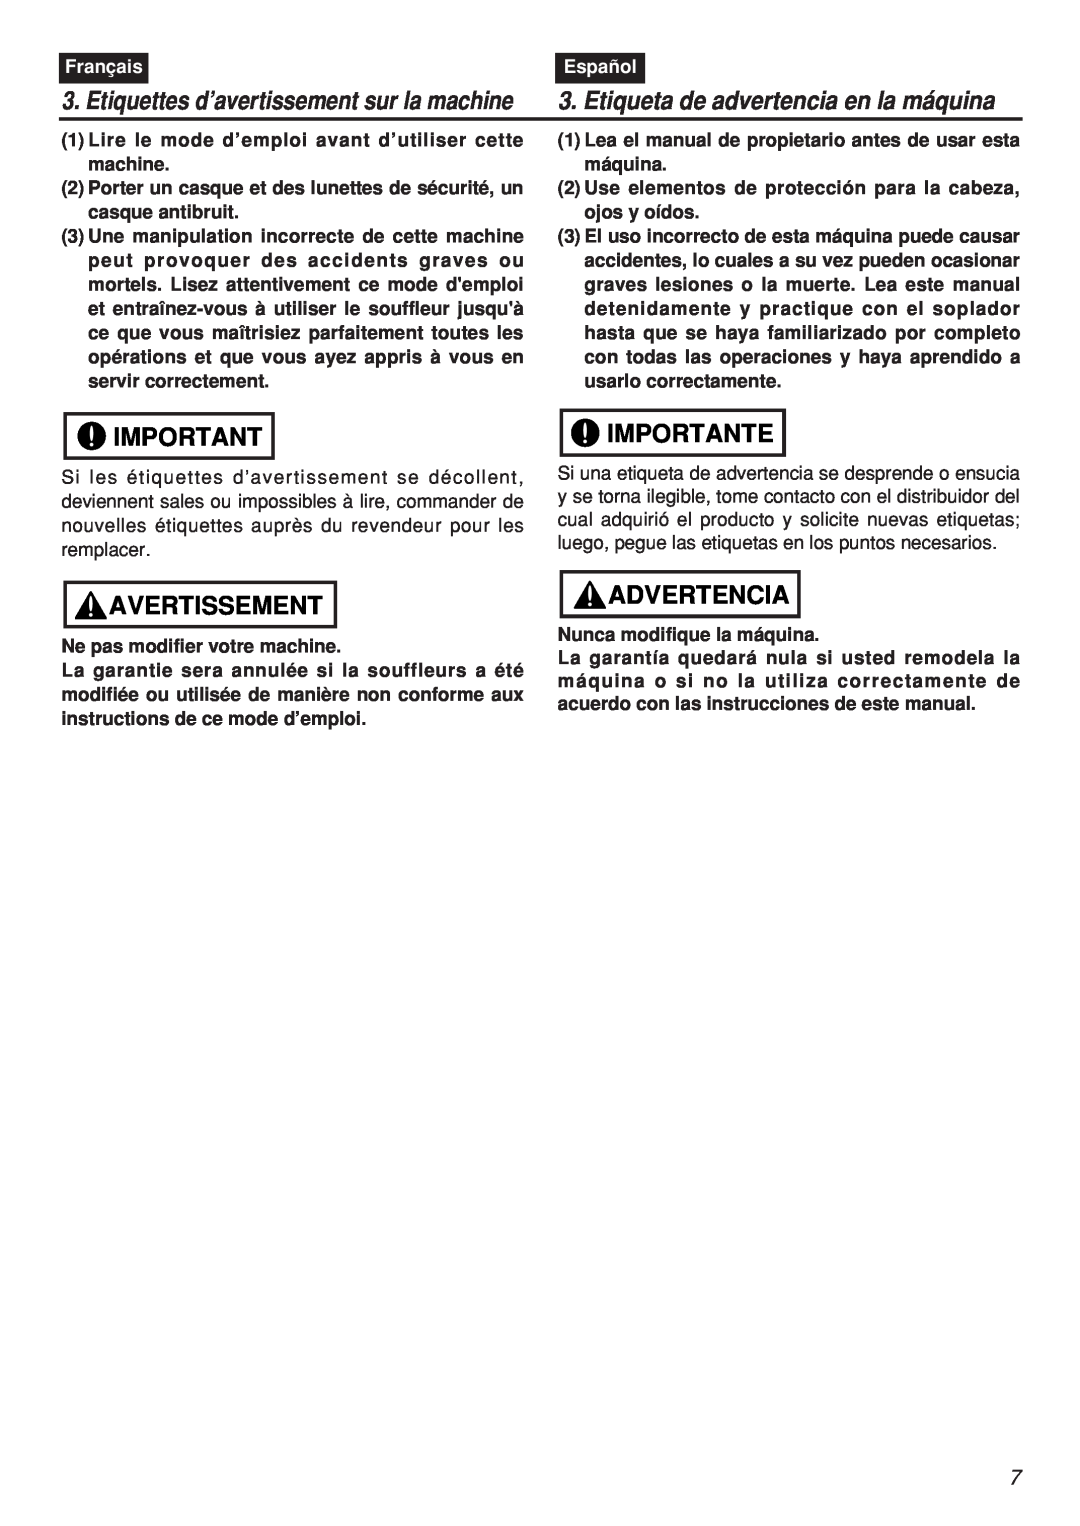 Zenoah EBZ7001-CA Avertissement, Importante, Advertencia, Etiquettes d’avertissement sur la machine, Français, Español 